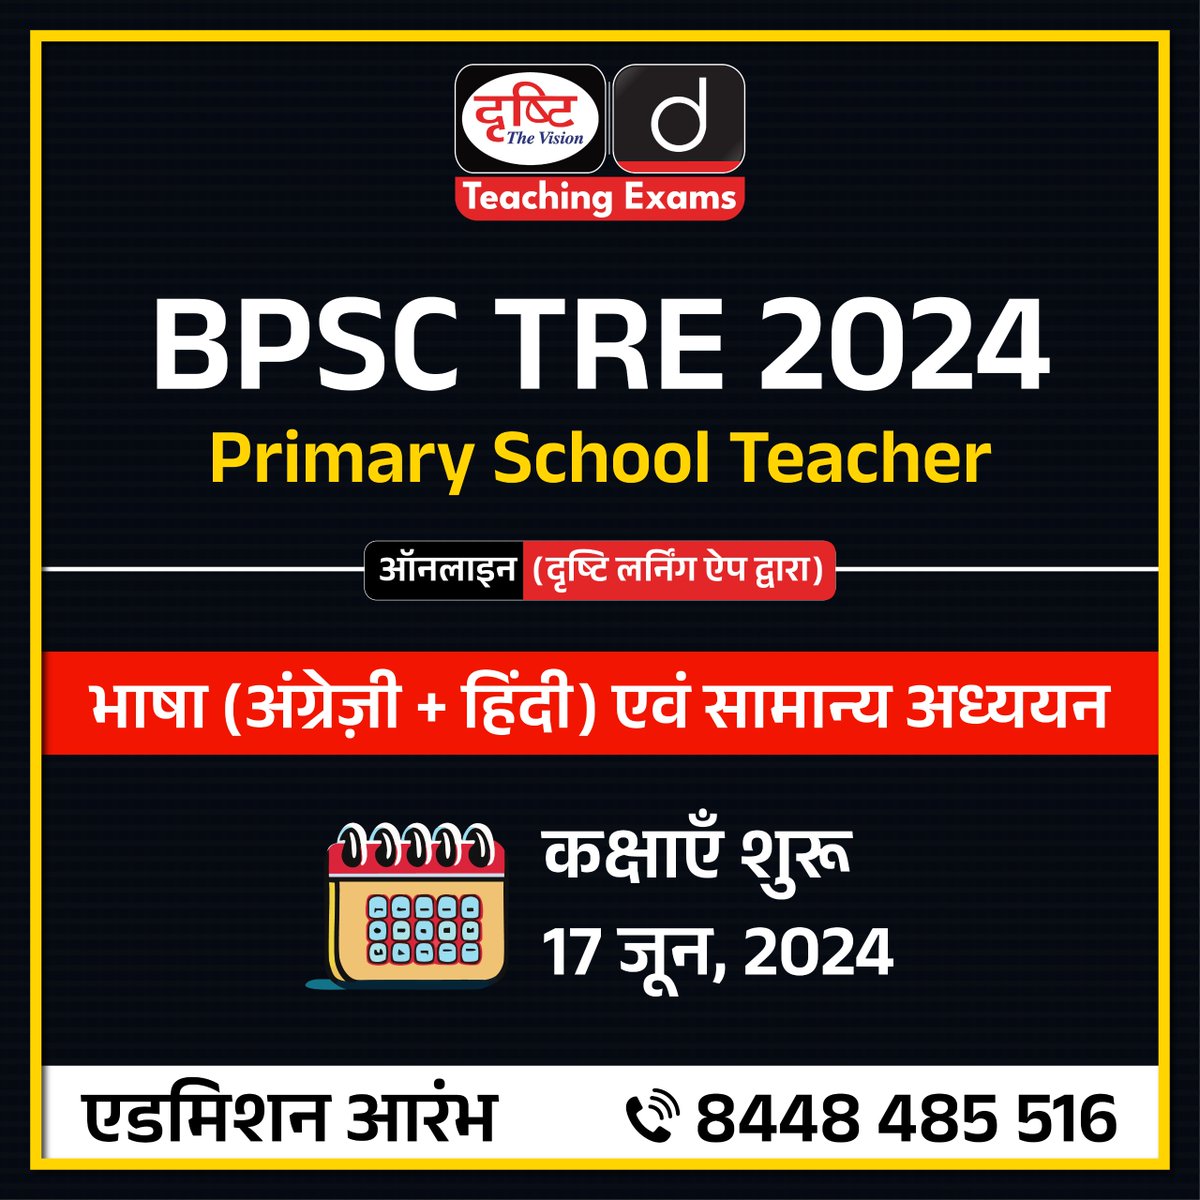 BPSC TRE 2024 कोर्स

Primary School Teacher
.
मोड : ऑनलाइन (दृष्टि लर्निंग ऐप द्वारा)
.
एडमिशन आरंभ
.
कोर्स में एडमिशन के लिये आप इस लिंक पर क्लिक करें: drishti.xyz/Hindi-Online-C…
.
संपर्क करें: 8448485516
.
#BPSCTRE #BPSC #TRE #PrimarySchoolTeacher #DrishtiTeachingExams